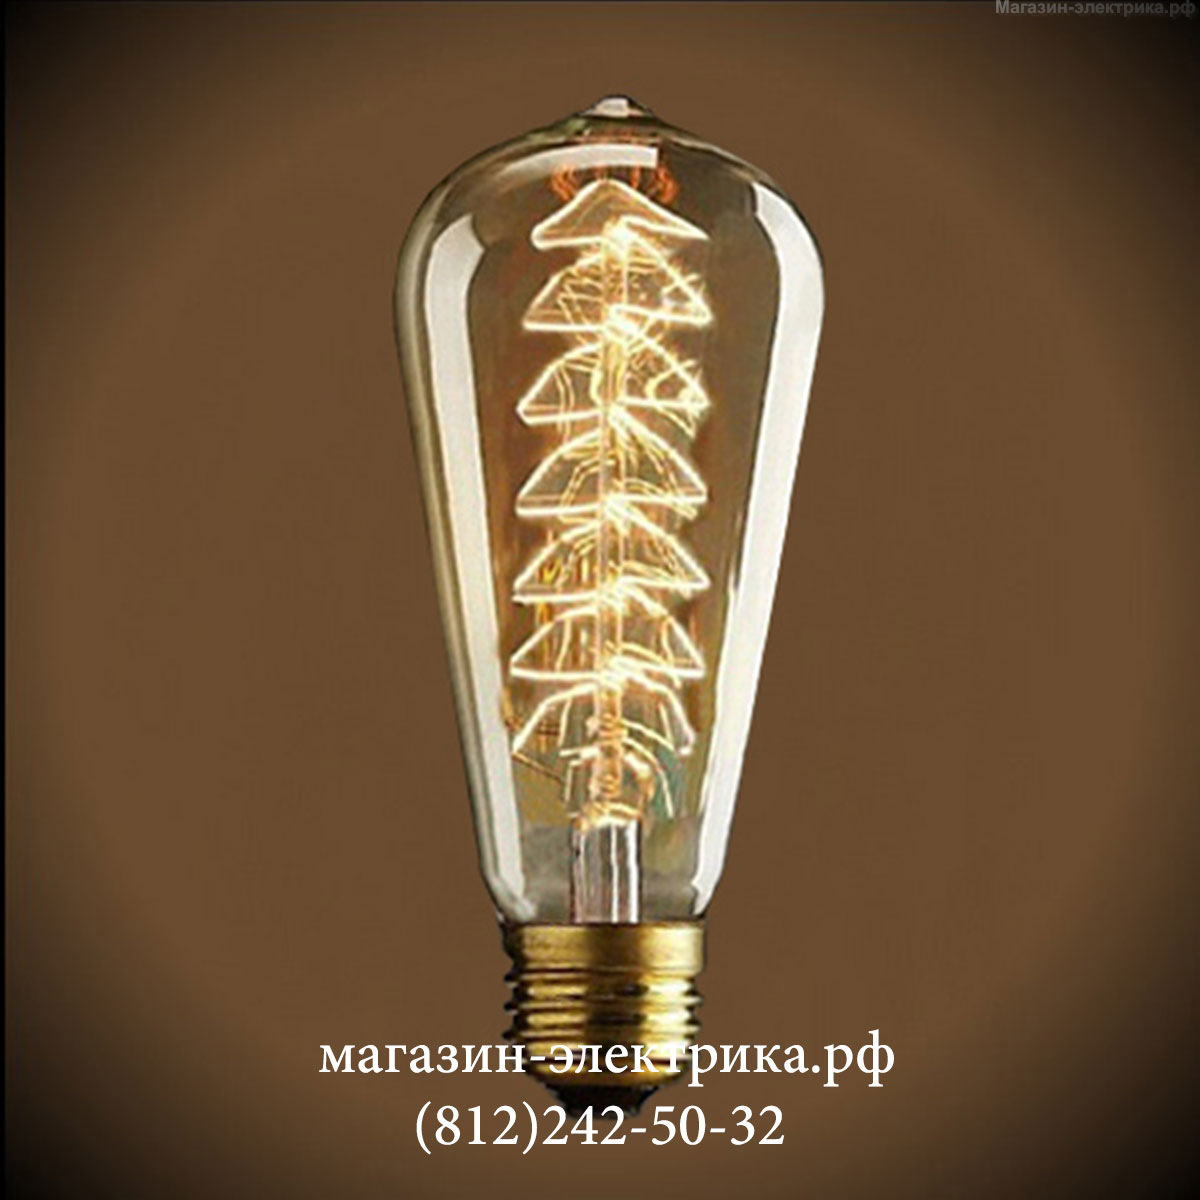 Винтажная лампа Эдисона Tree ST 64